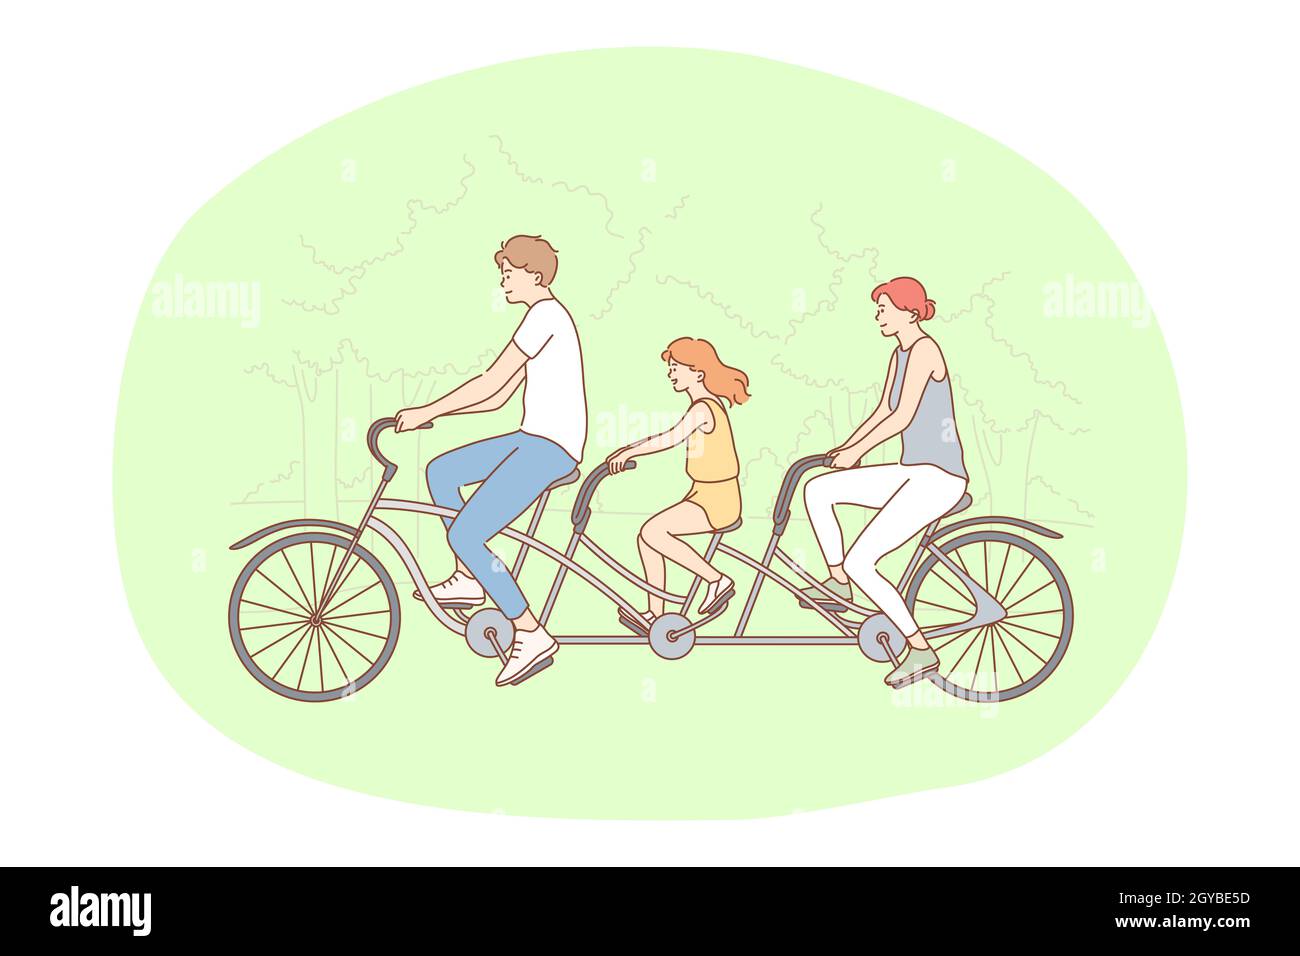 Mode de vie actif sain, sport, loisir concept de passe-temps. Jeune famille heureuse appréciant de faire du vélo ensemble dans le parc sur l'illustration estivale. Loi sur la famille Banque D'Images